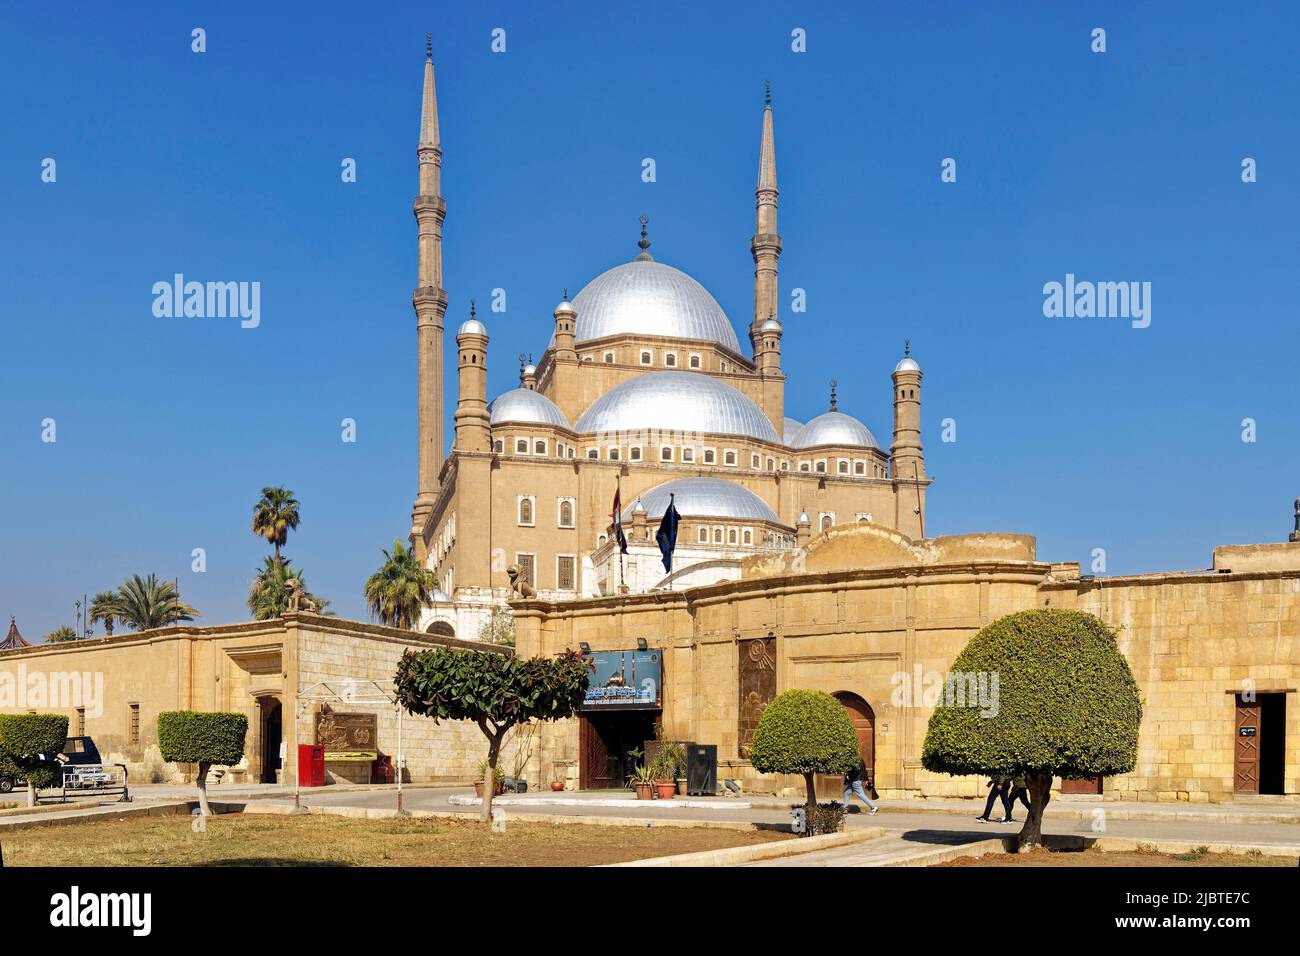 Egypte, le Caire, la vieille ville classée au patrimoine mondial de l'UNESCO, la Citadelle avec la Mosquée Mohammed Ali Banque D'Images